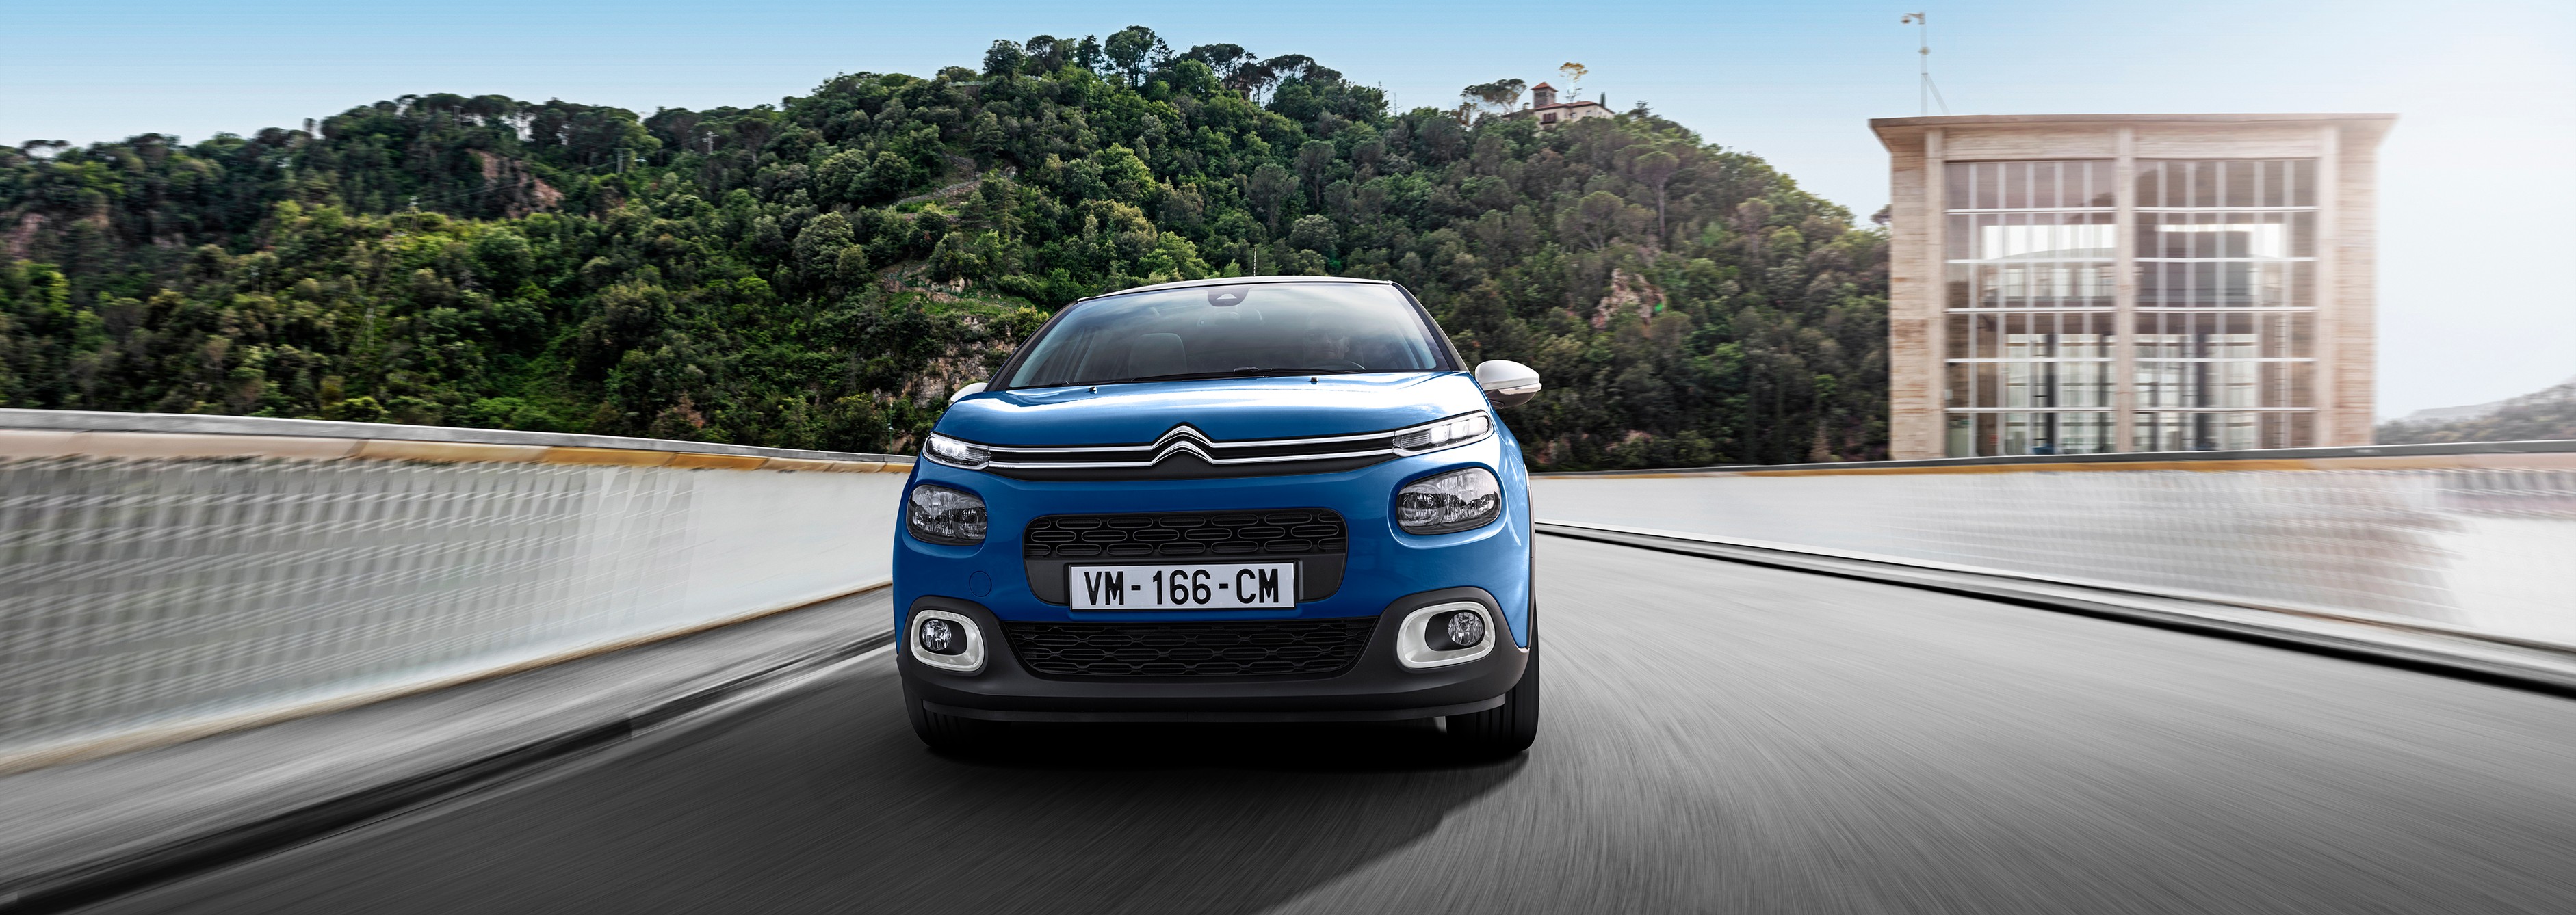 Citroën Berlingo restylé : disponible en versions thermiques ?